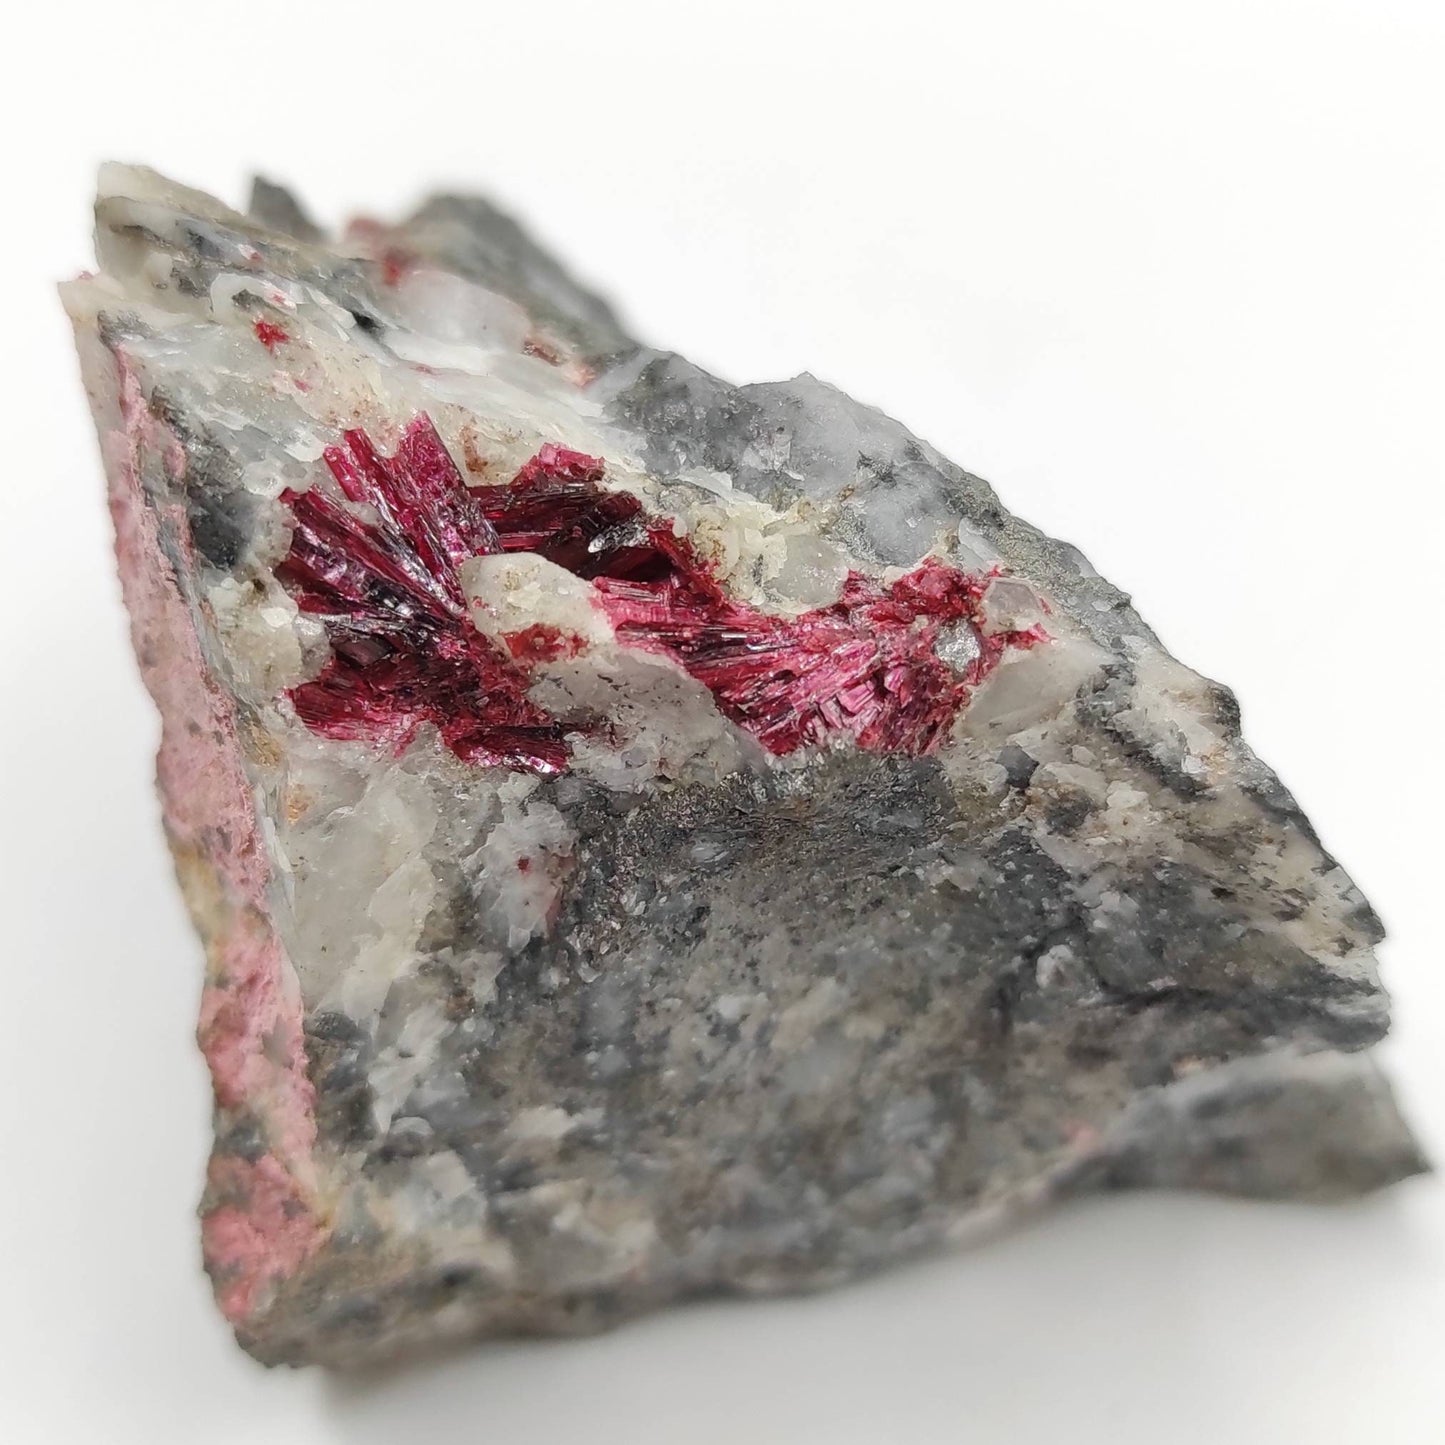 RARE! 186g Erythrite Mineral Specimen - Bou Azzer, Morocco - Rare Erythrite Crystal Specimen - Cobalt Bloom Crystal - Red Cobalt Crystal